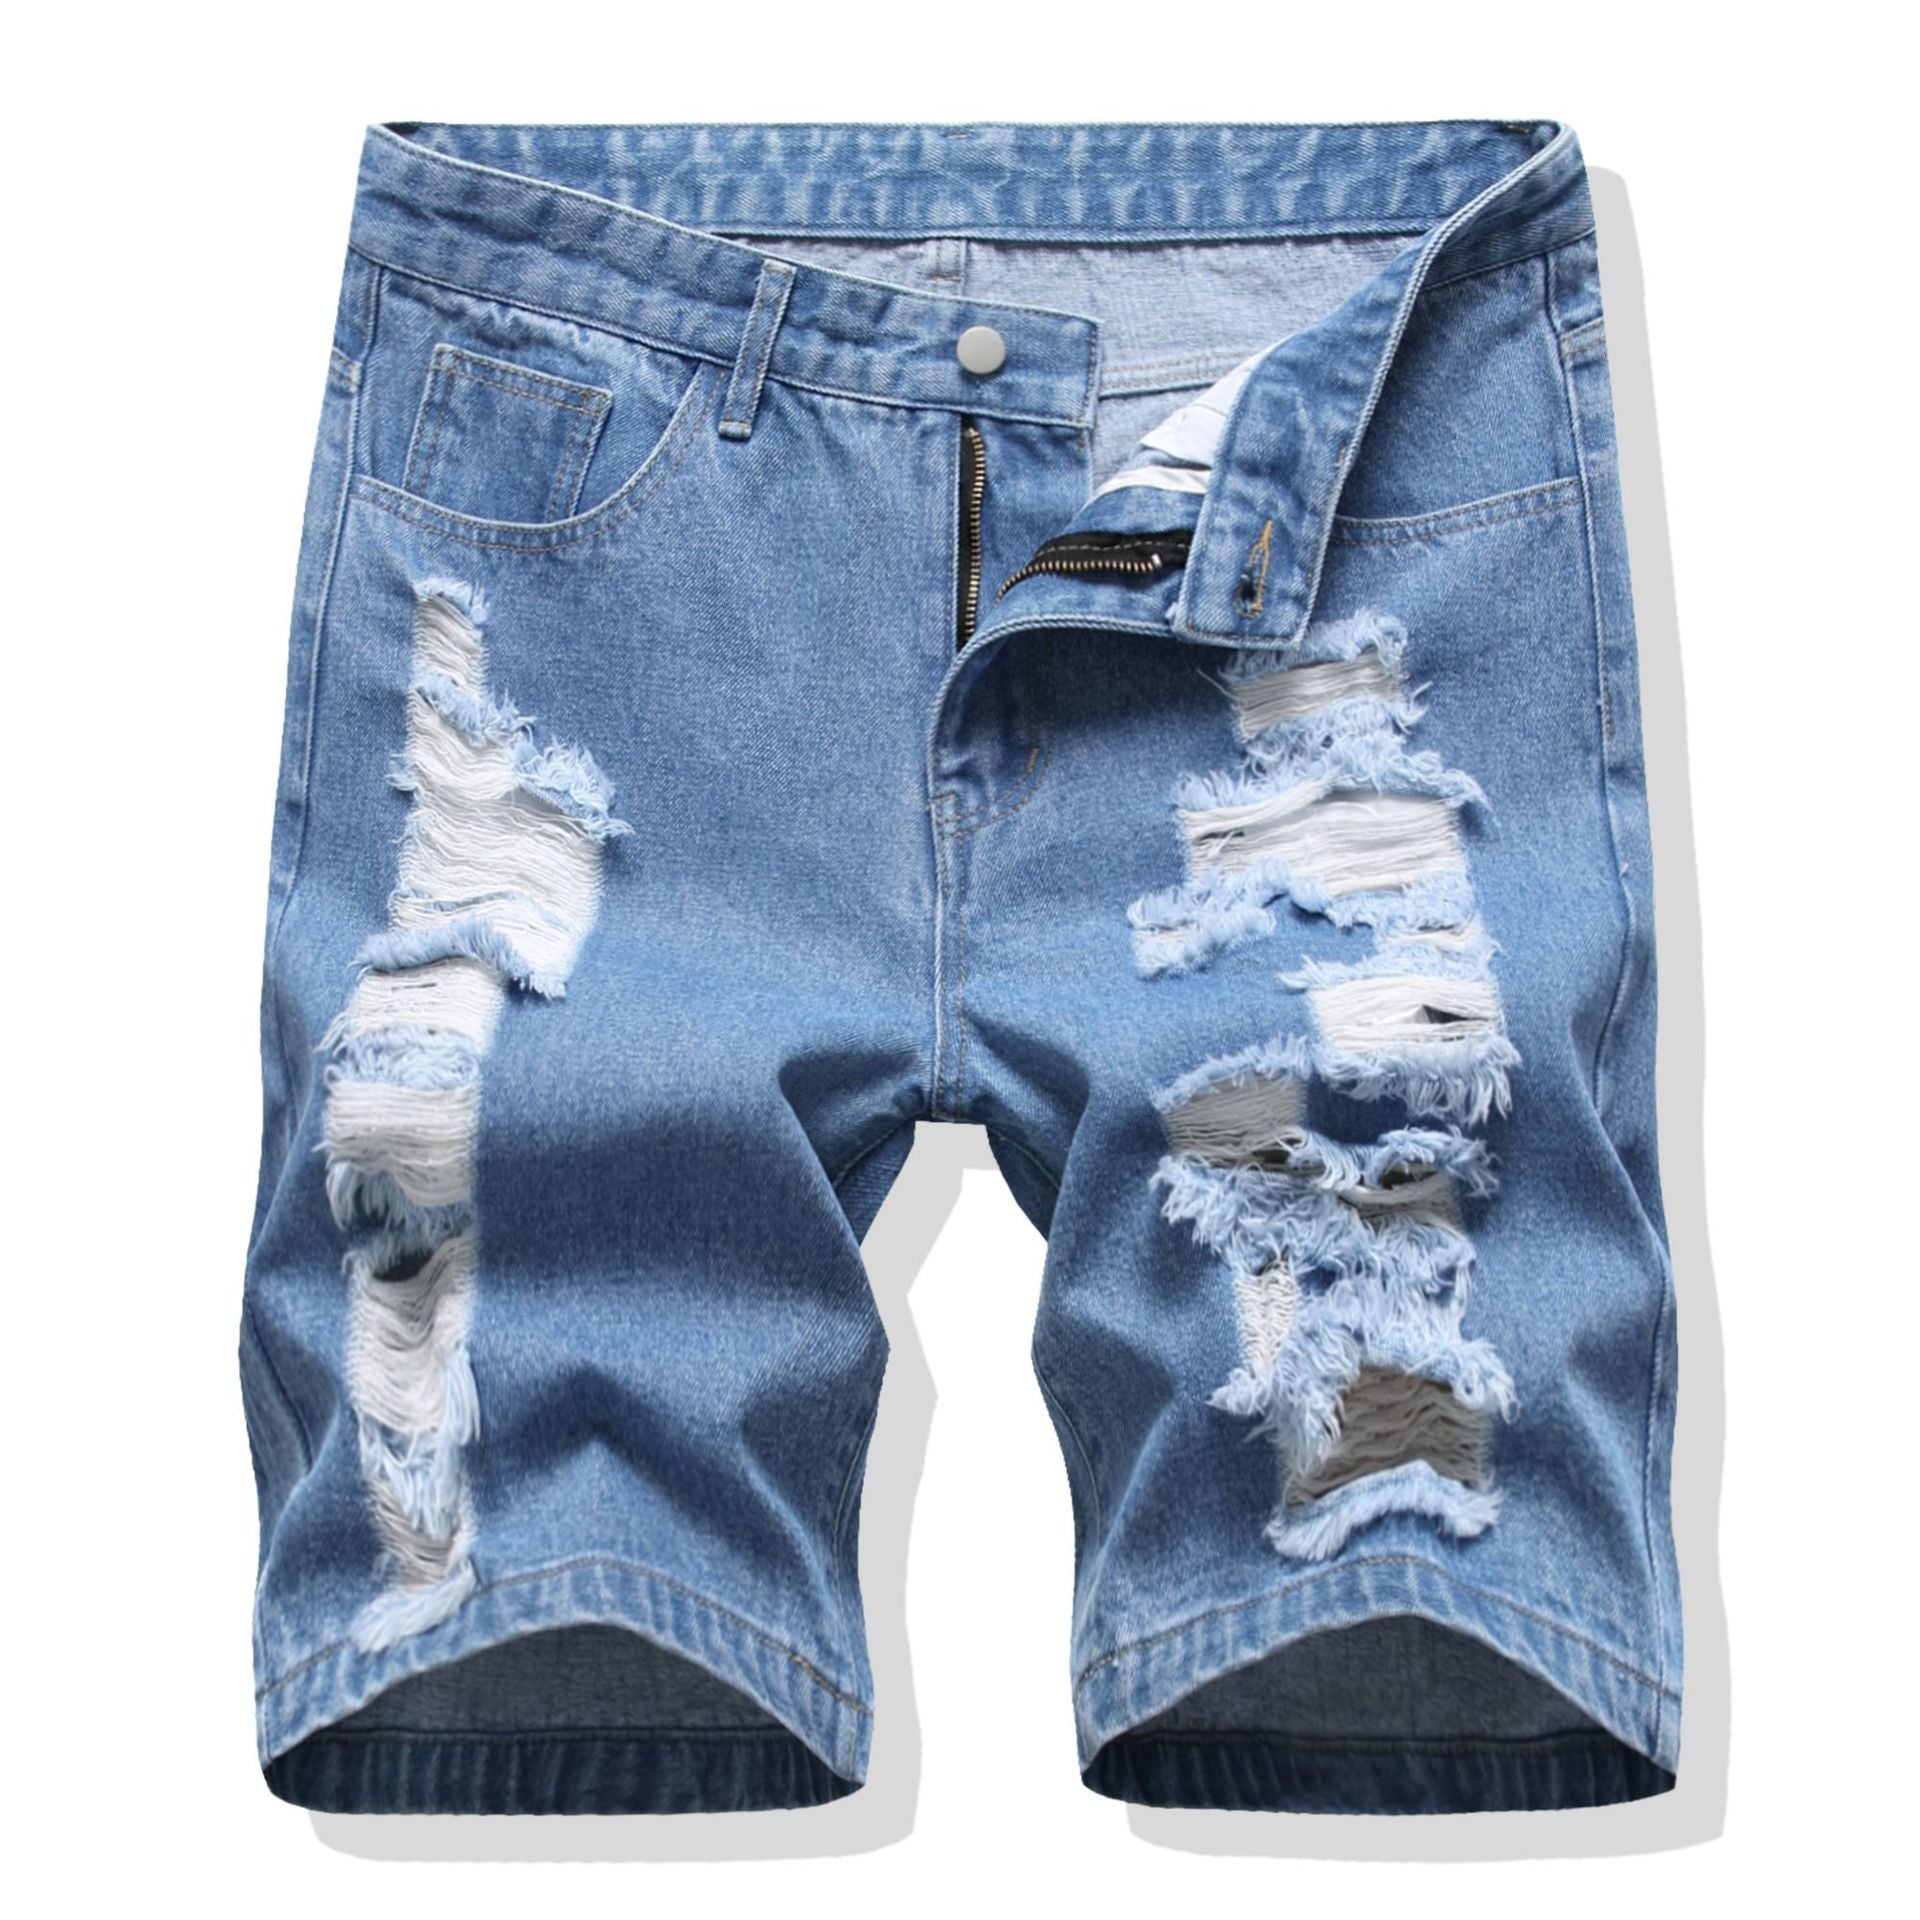 Denim pants men's ripped jeans-Move Position